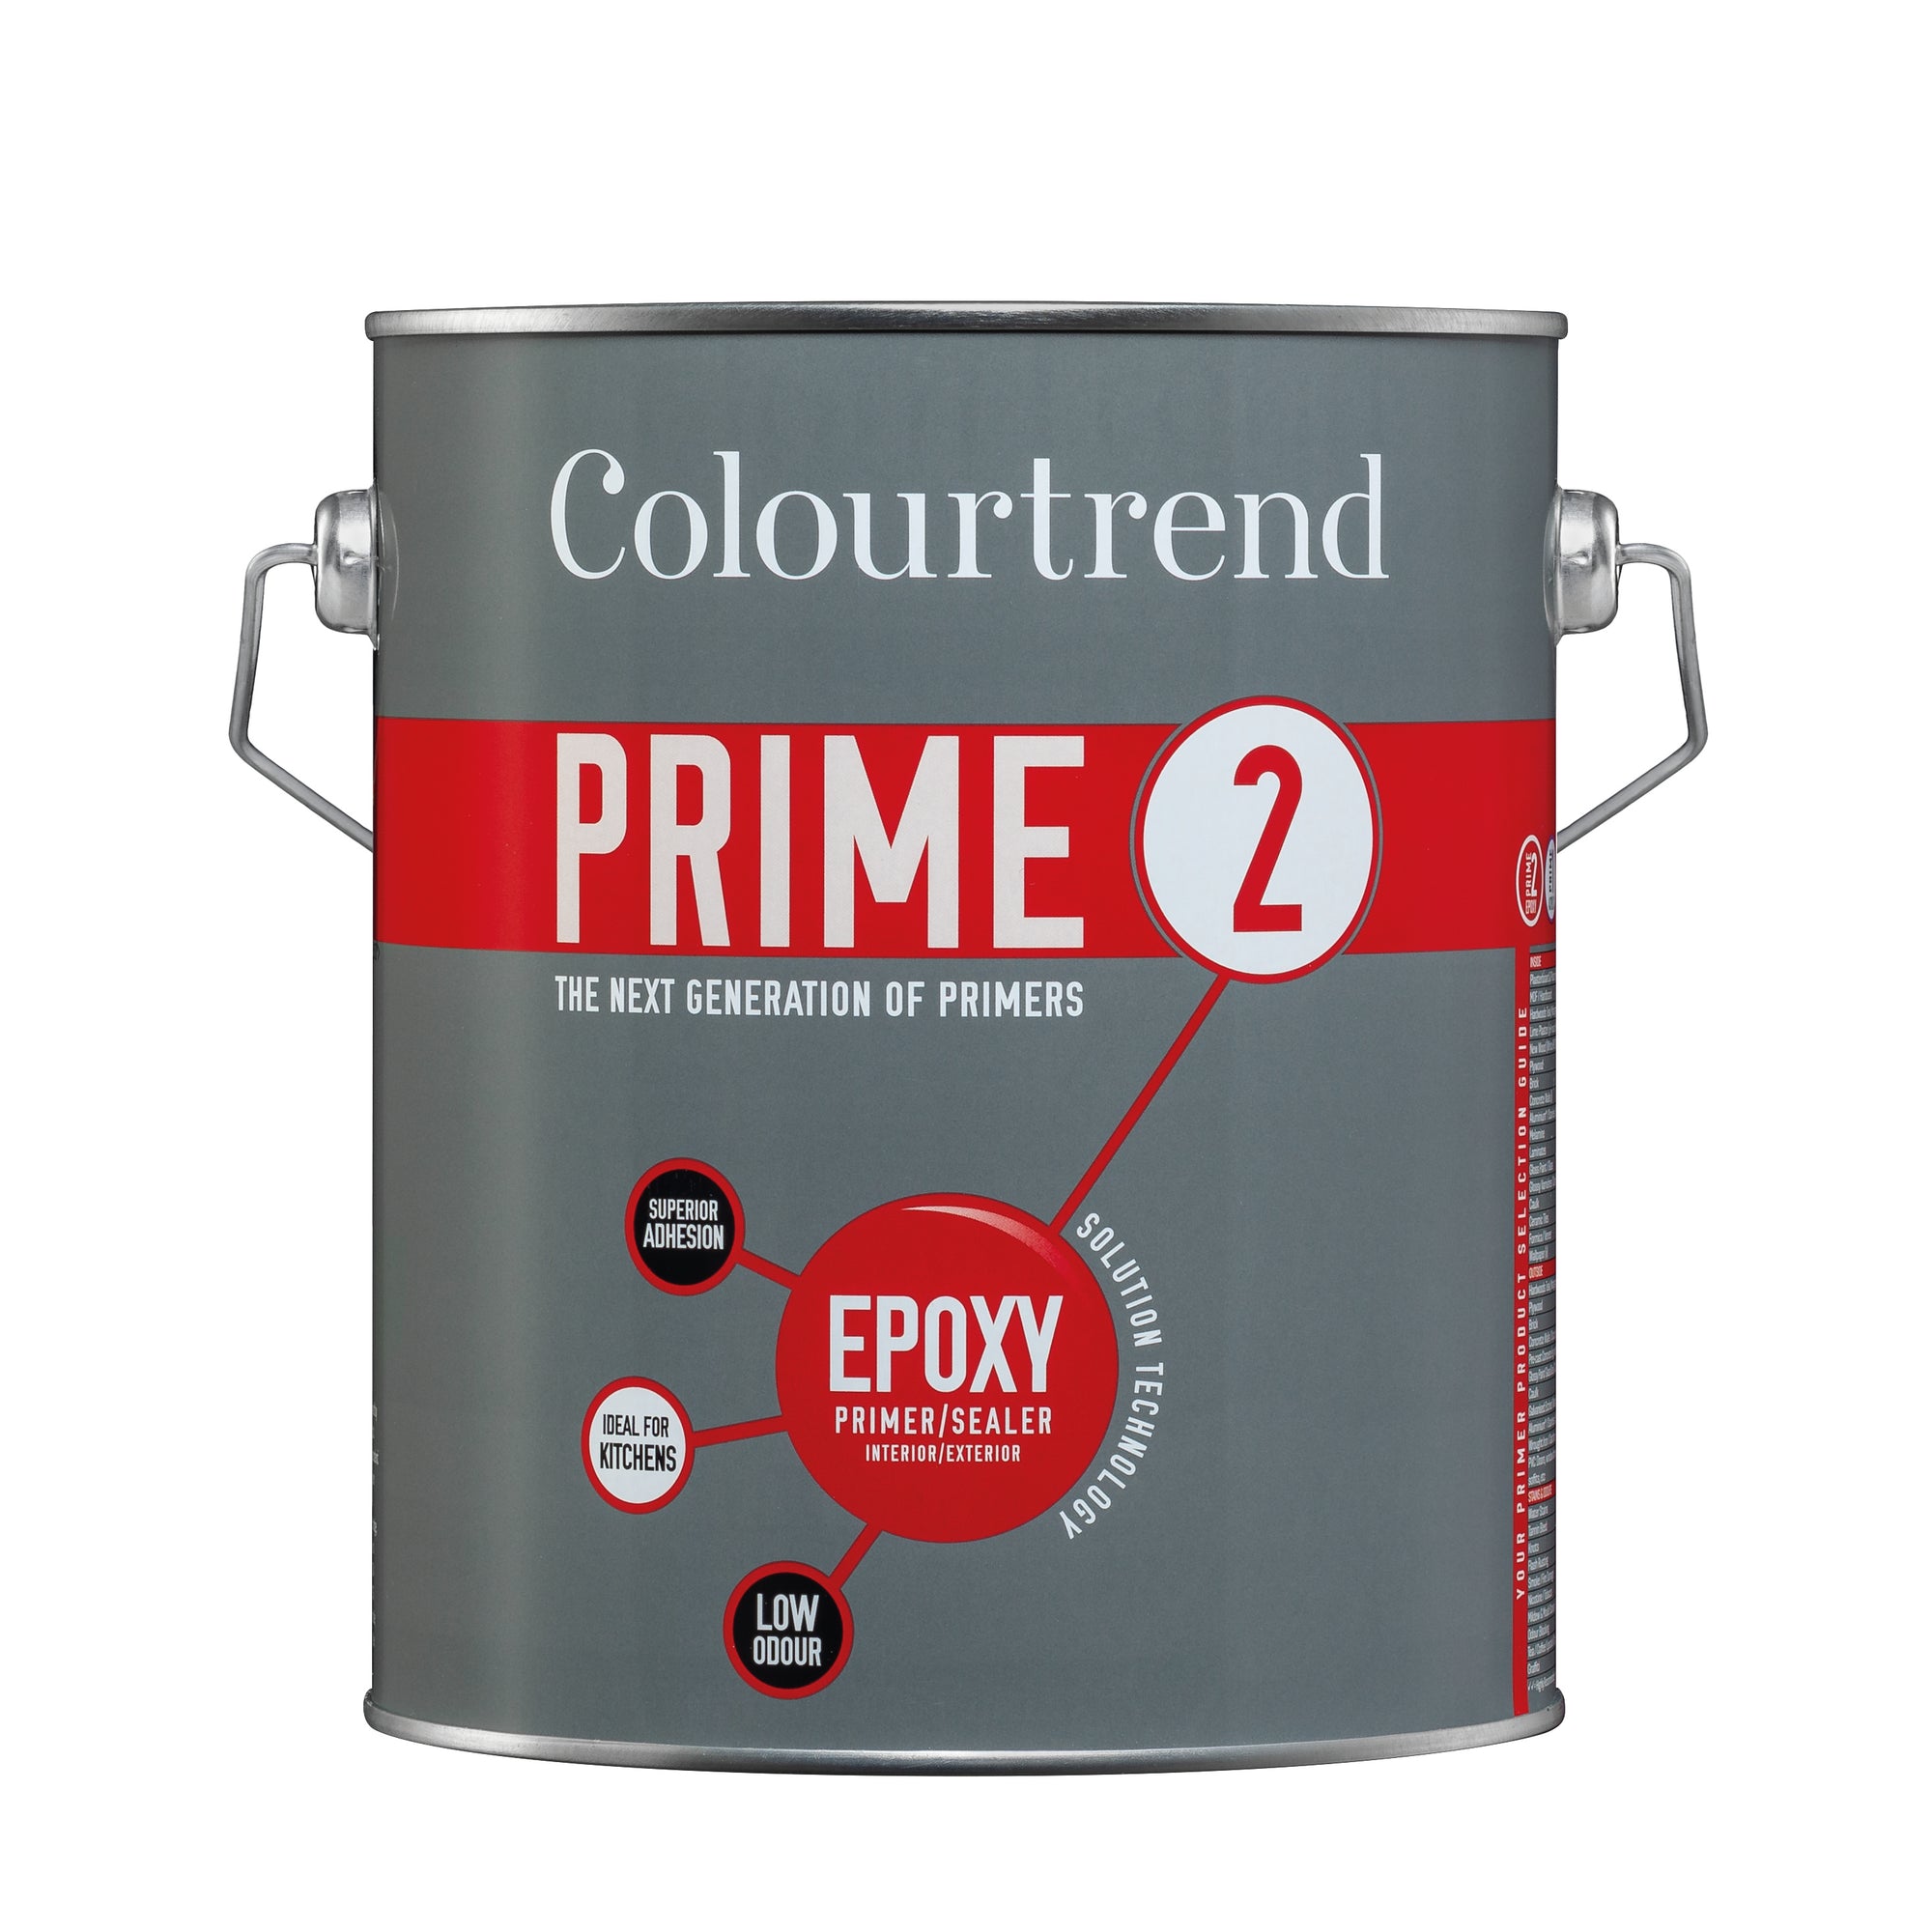 Prime 2 - EPOXY